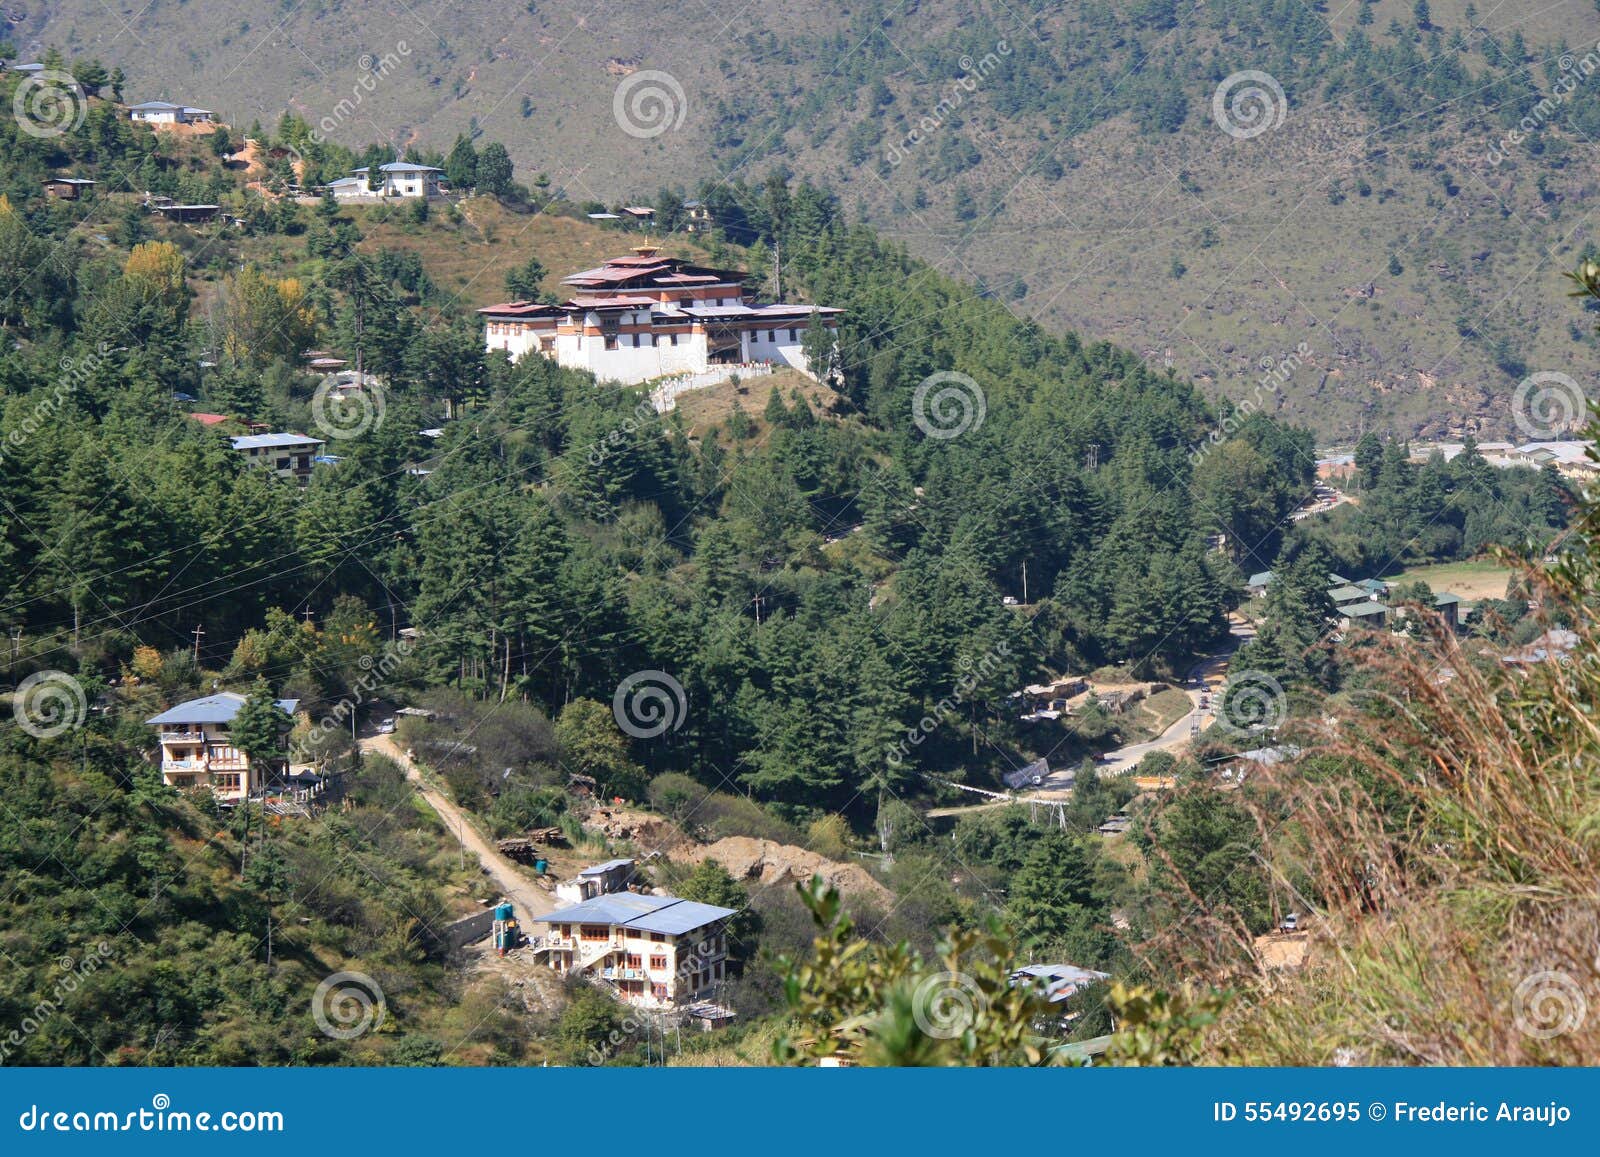 simtokha dzong - thimphu - bhutan